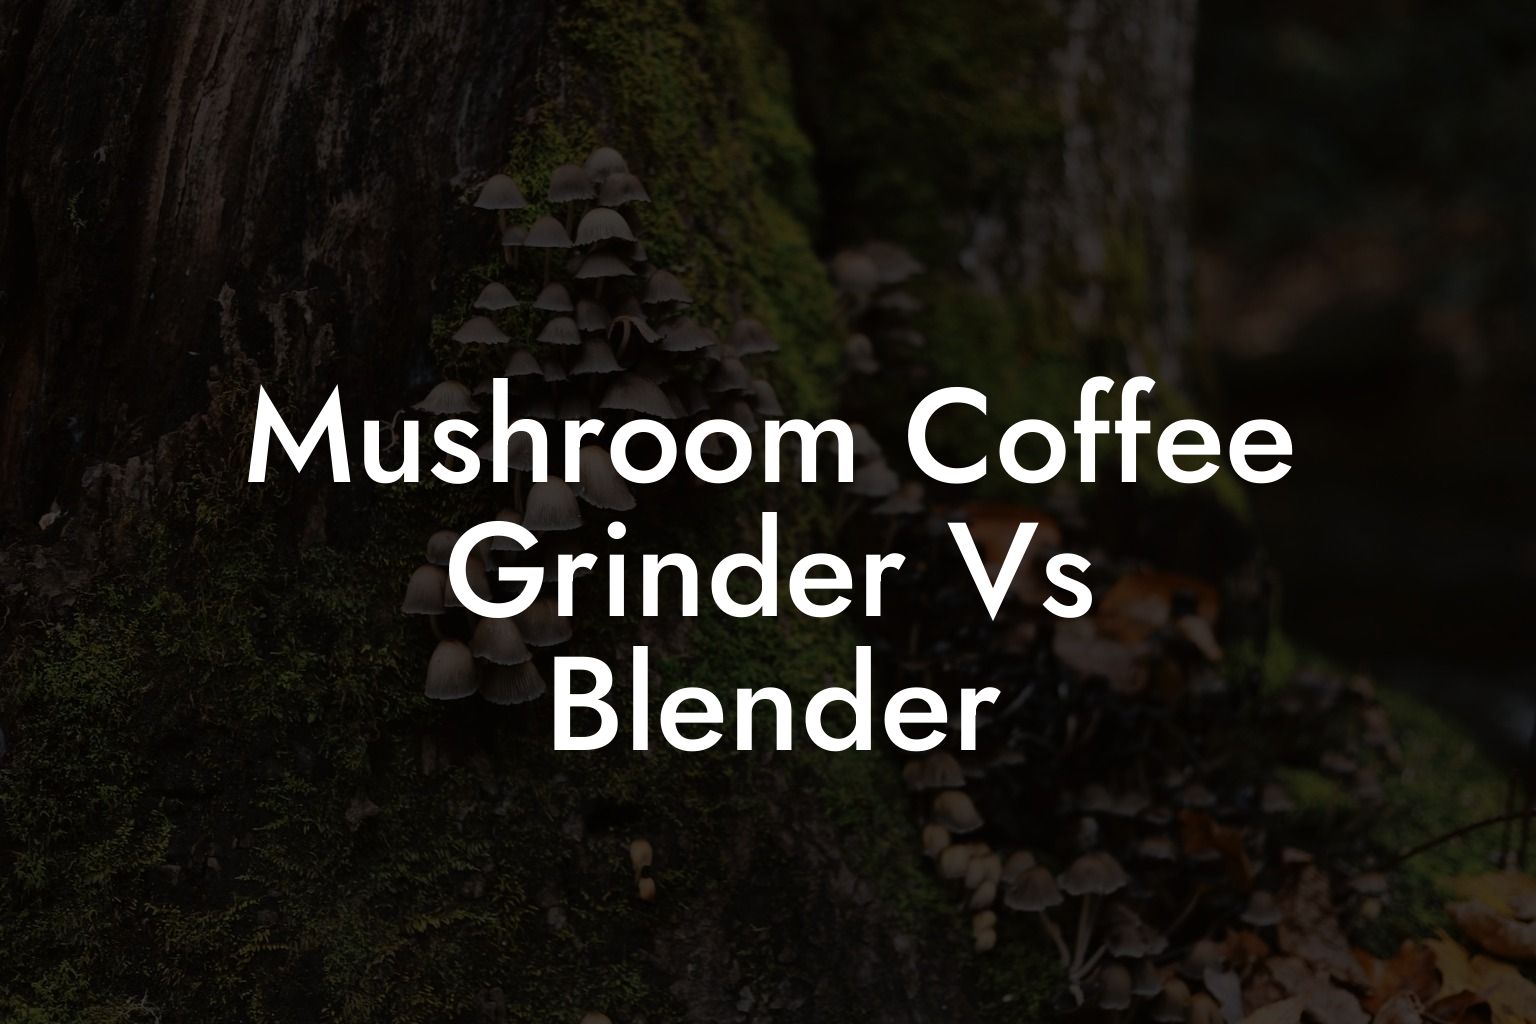 Mushroom Coffee Grinder Vs Blender